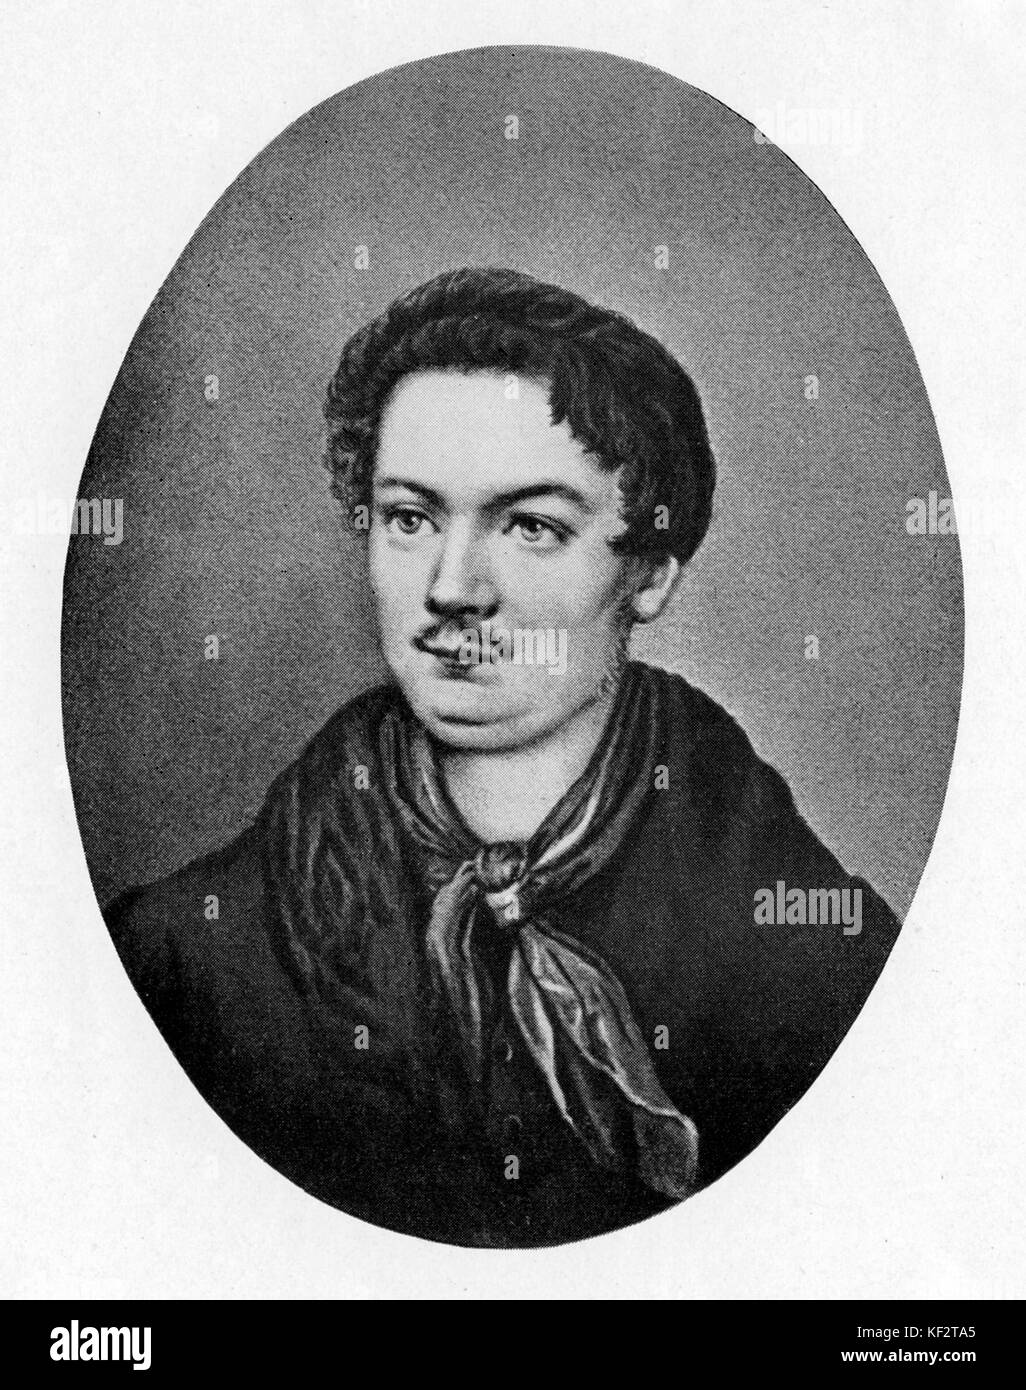 Robert R. Schumann - portrait, âgée de 21 ans. Compositeur allemand, époux de Clara Schumann, née Wieck), 8 juin 1810 - 29 juillet 1856. Banque D'Images